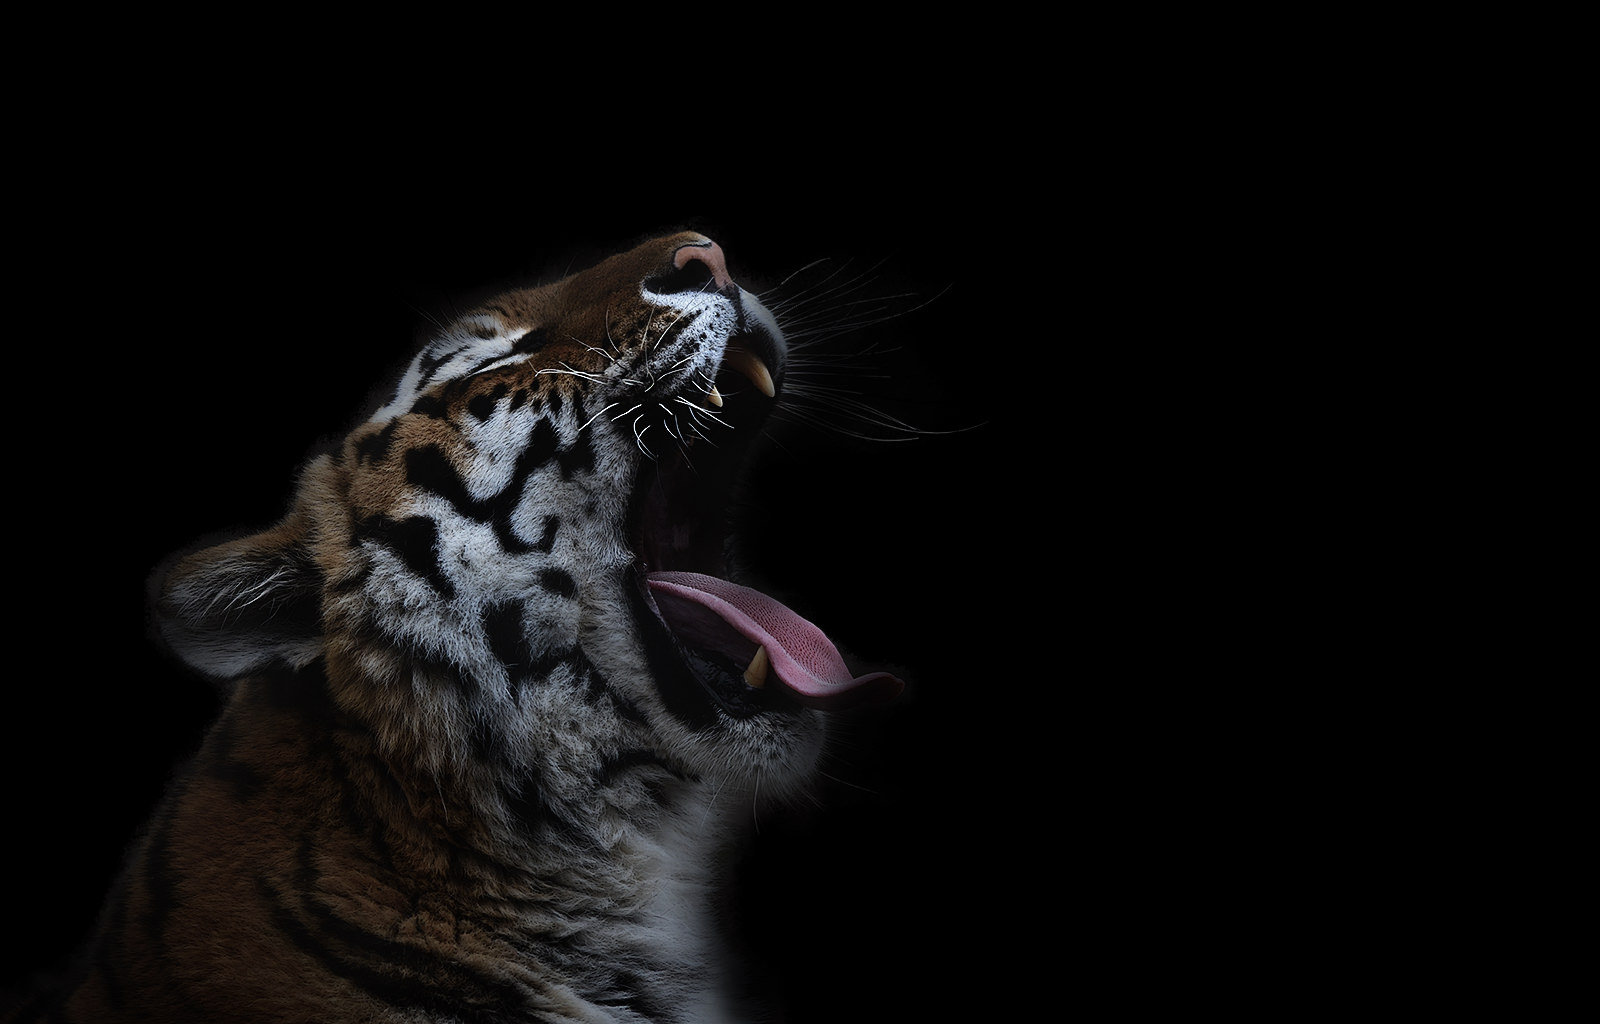 Tiger yawning - CLK